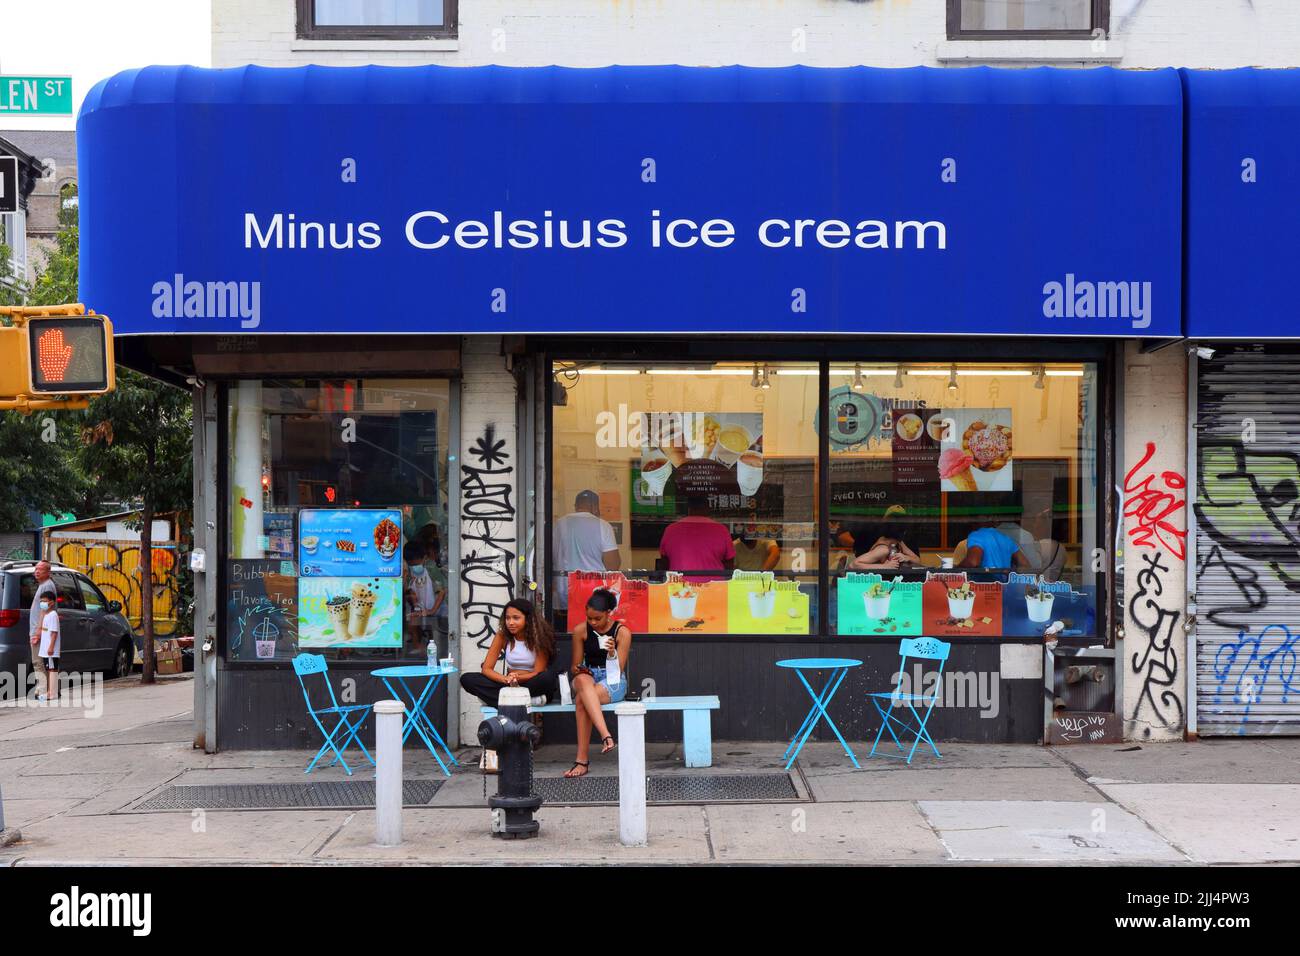 Minus Celsius Ice Cream, 302 Grand St, New York, NYC Foto von einem Eisladen in Manhattans Lower East Side, Chinatown. Stockfoto